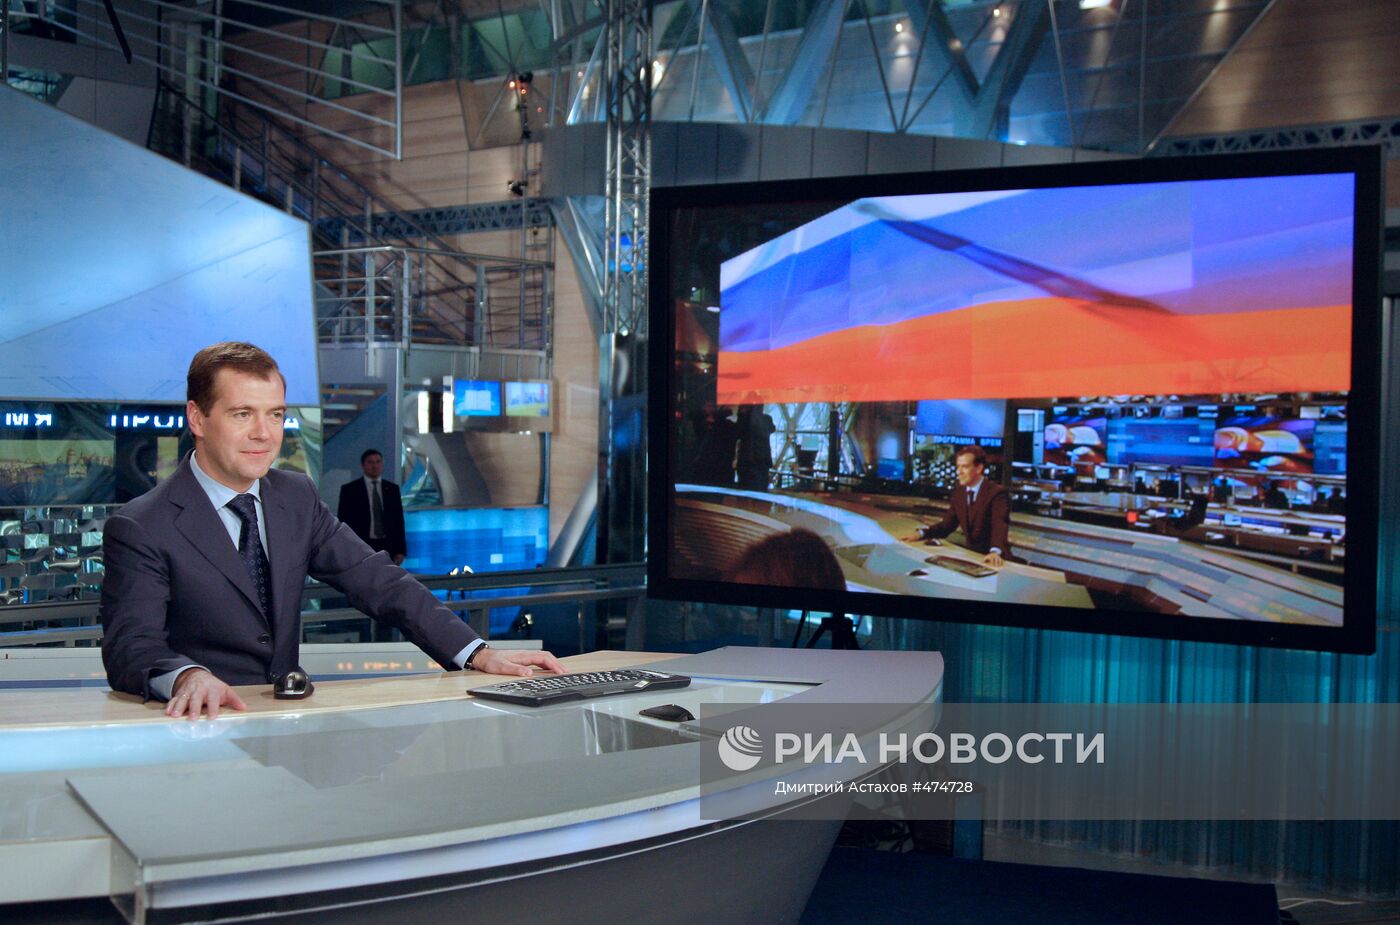 Президент РФ во время записи программы "Разговор с президентом"